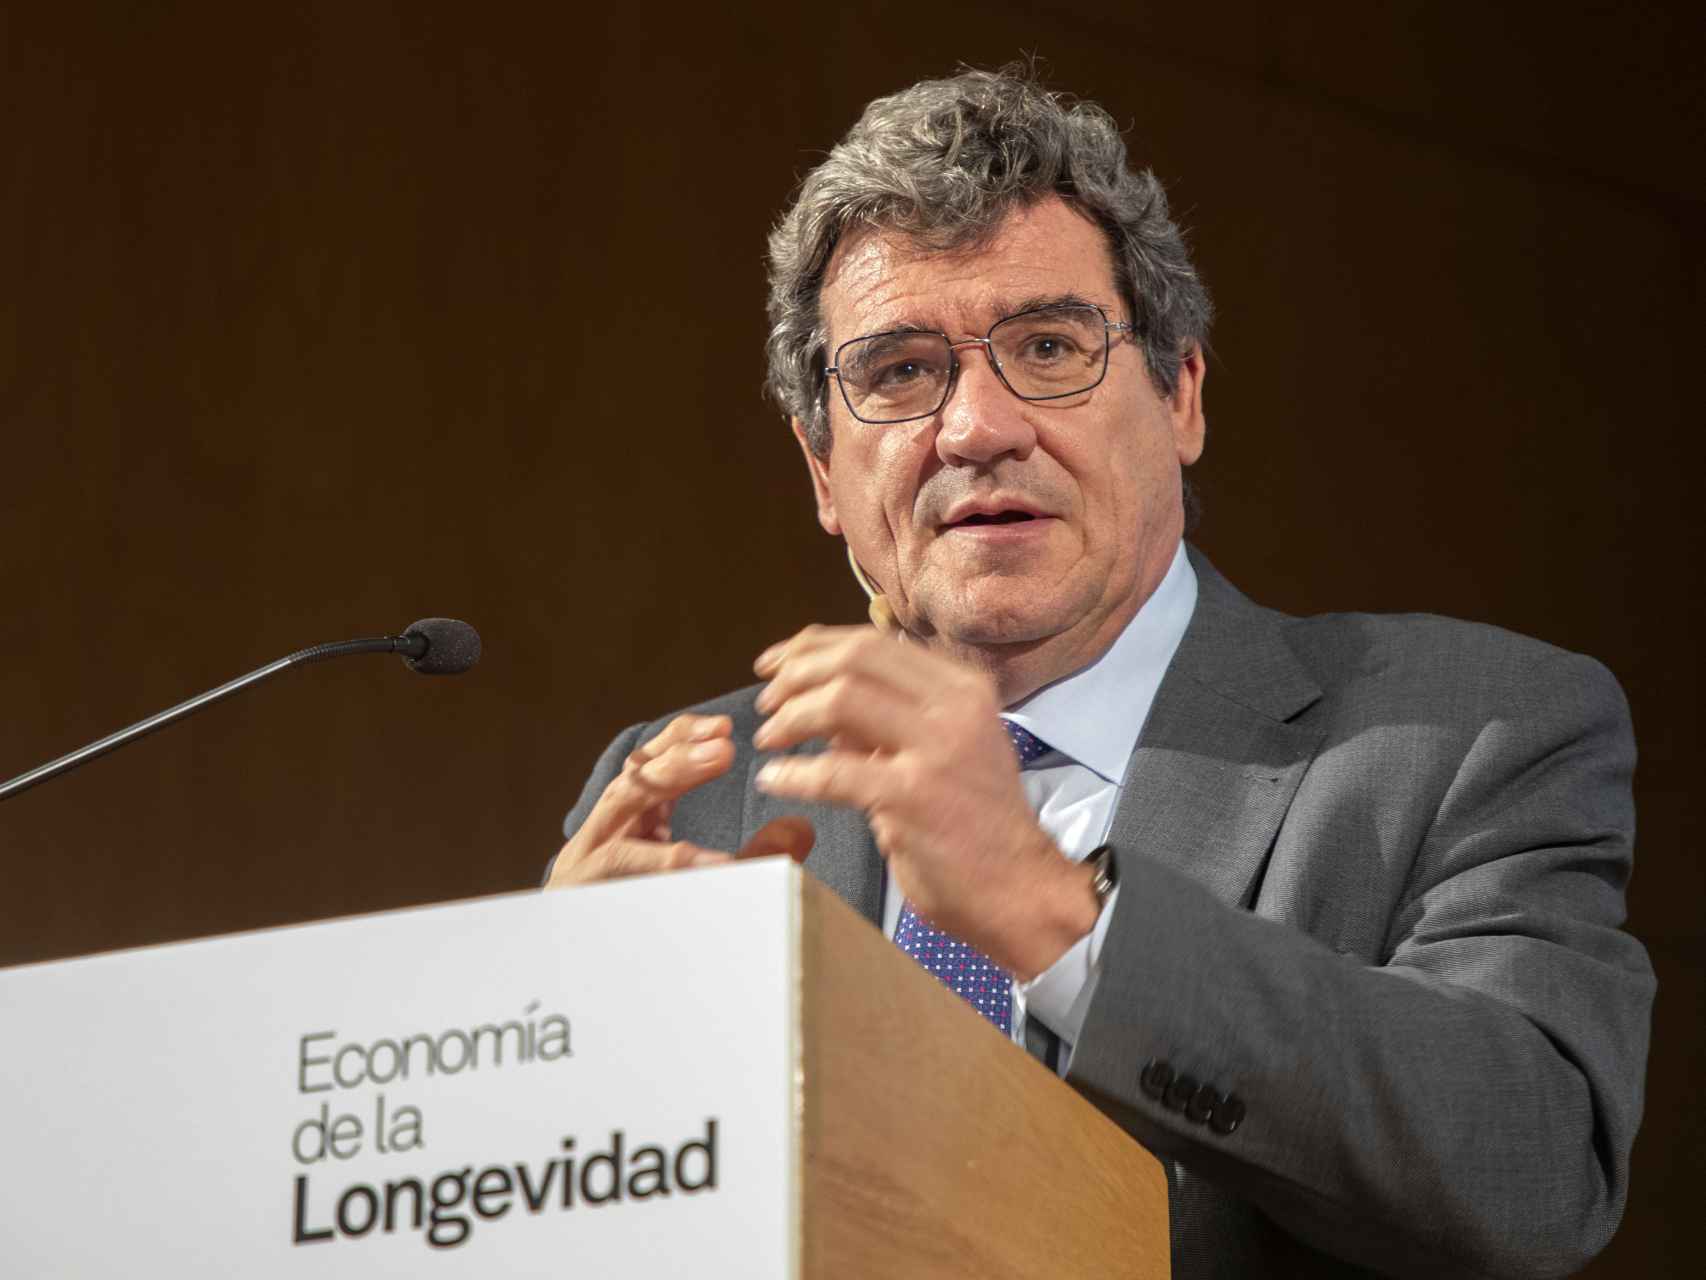 El ministro de Seguridad Social, José Luis Escrivá, este miércoles en el Congreso Internacional de Economía de la Longevidad en Salamanca.